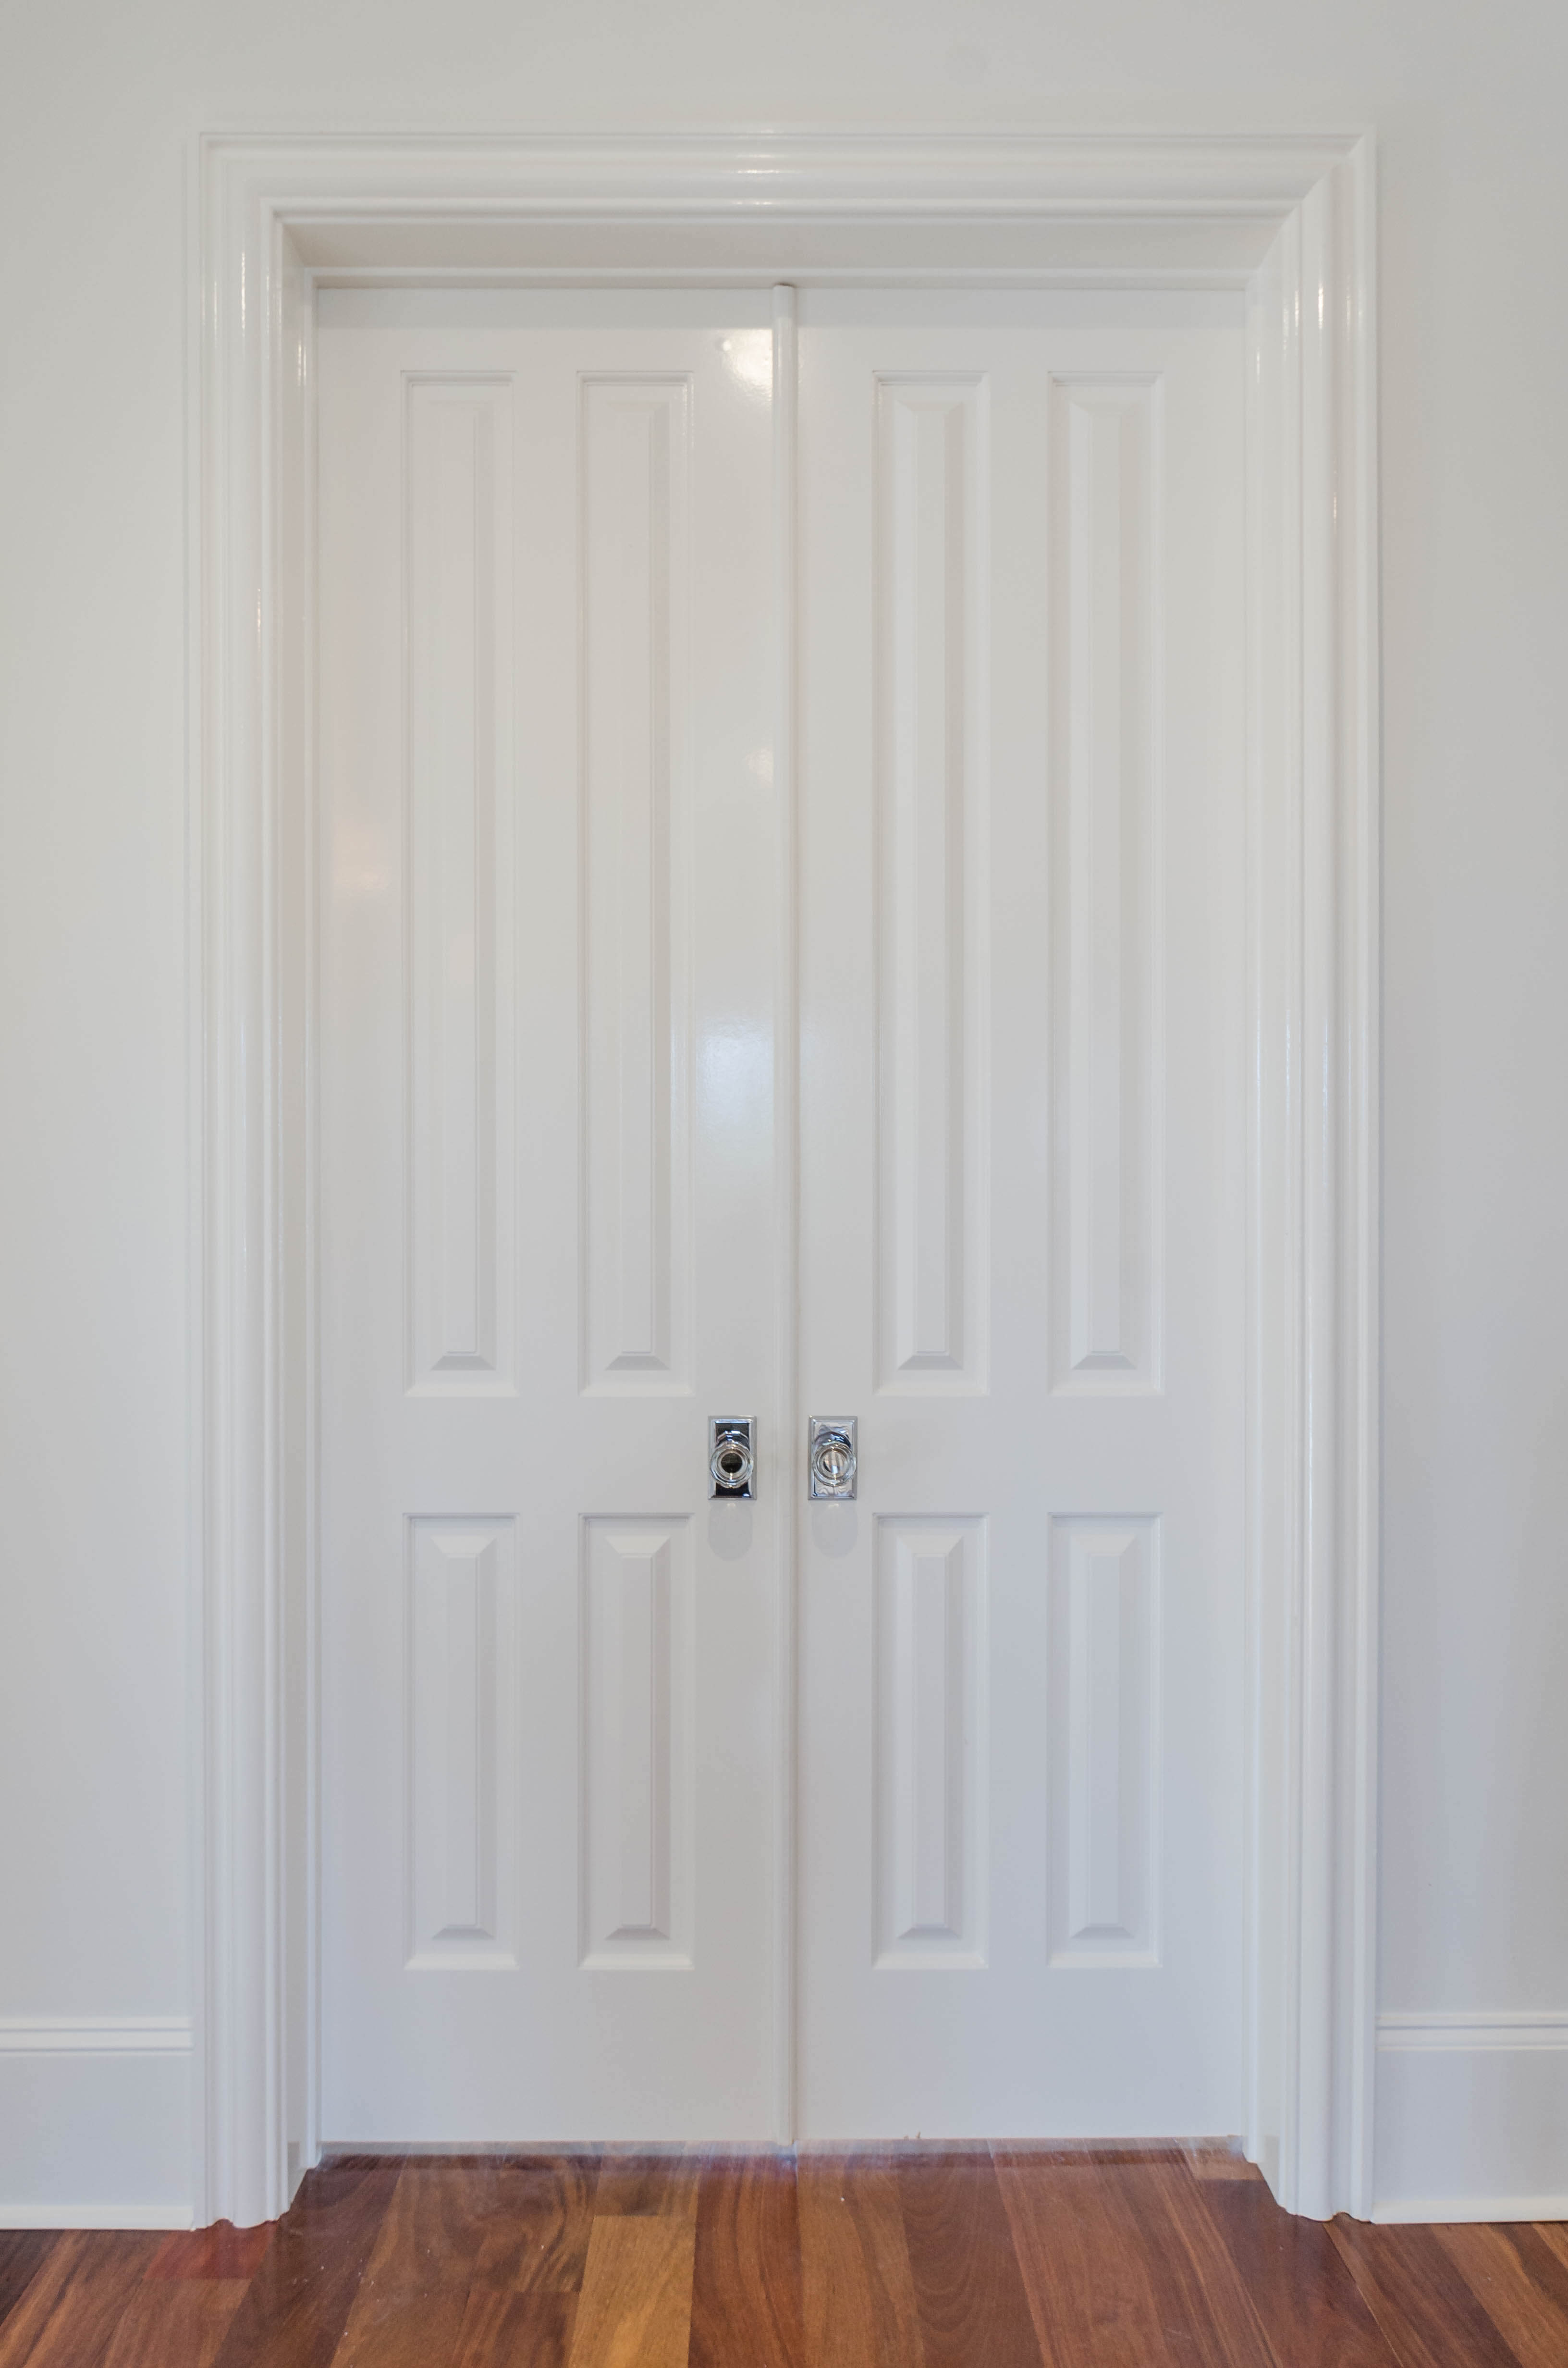 Interior Doors Wood And Moulded Varieties Jefferson Door